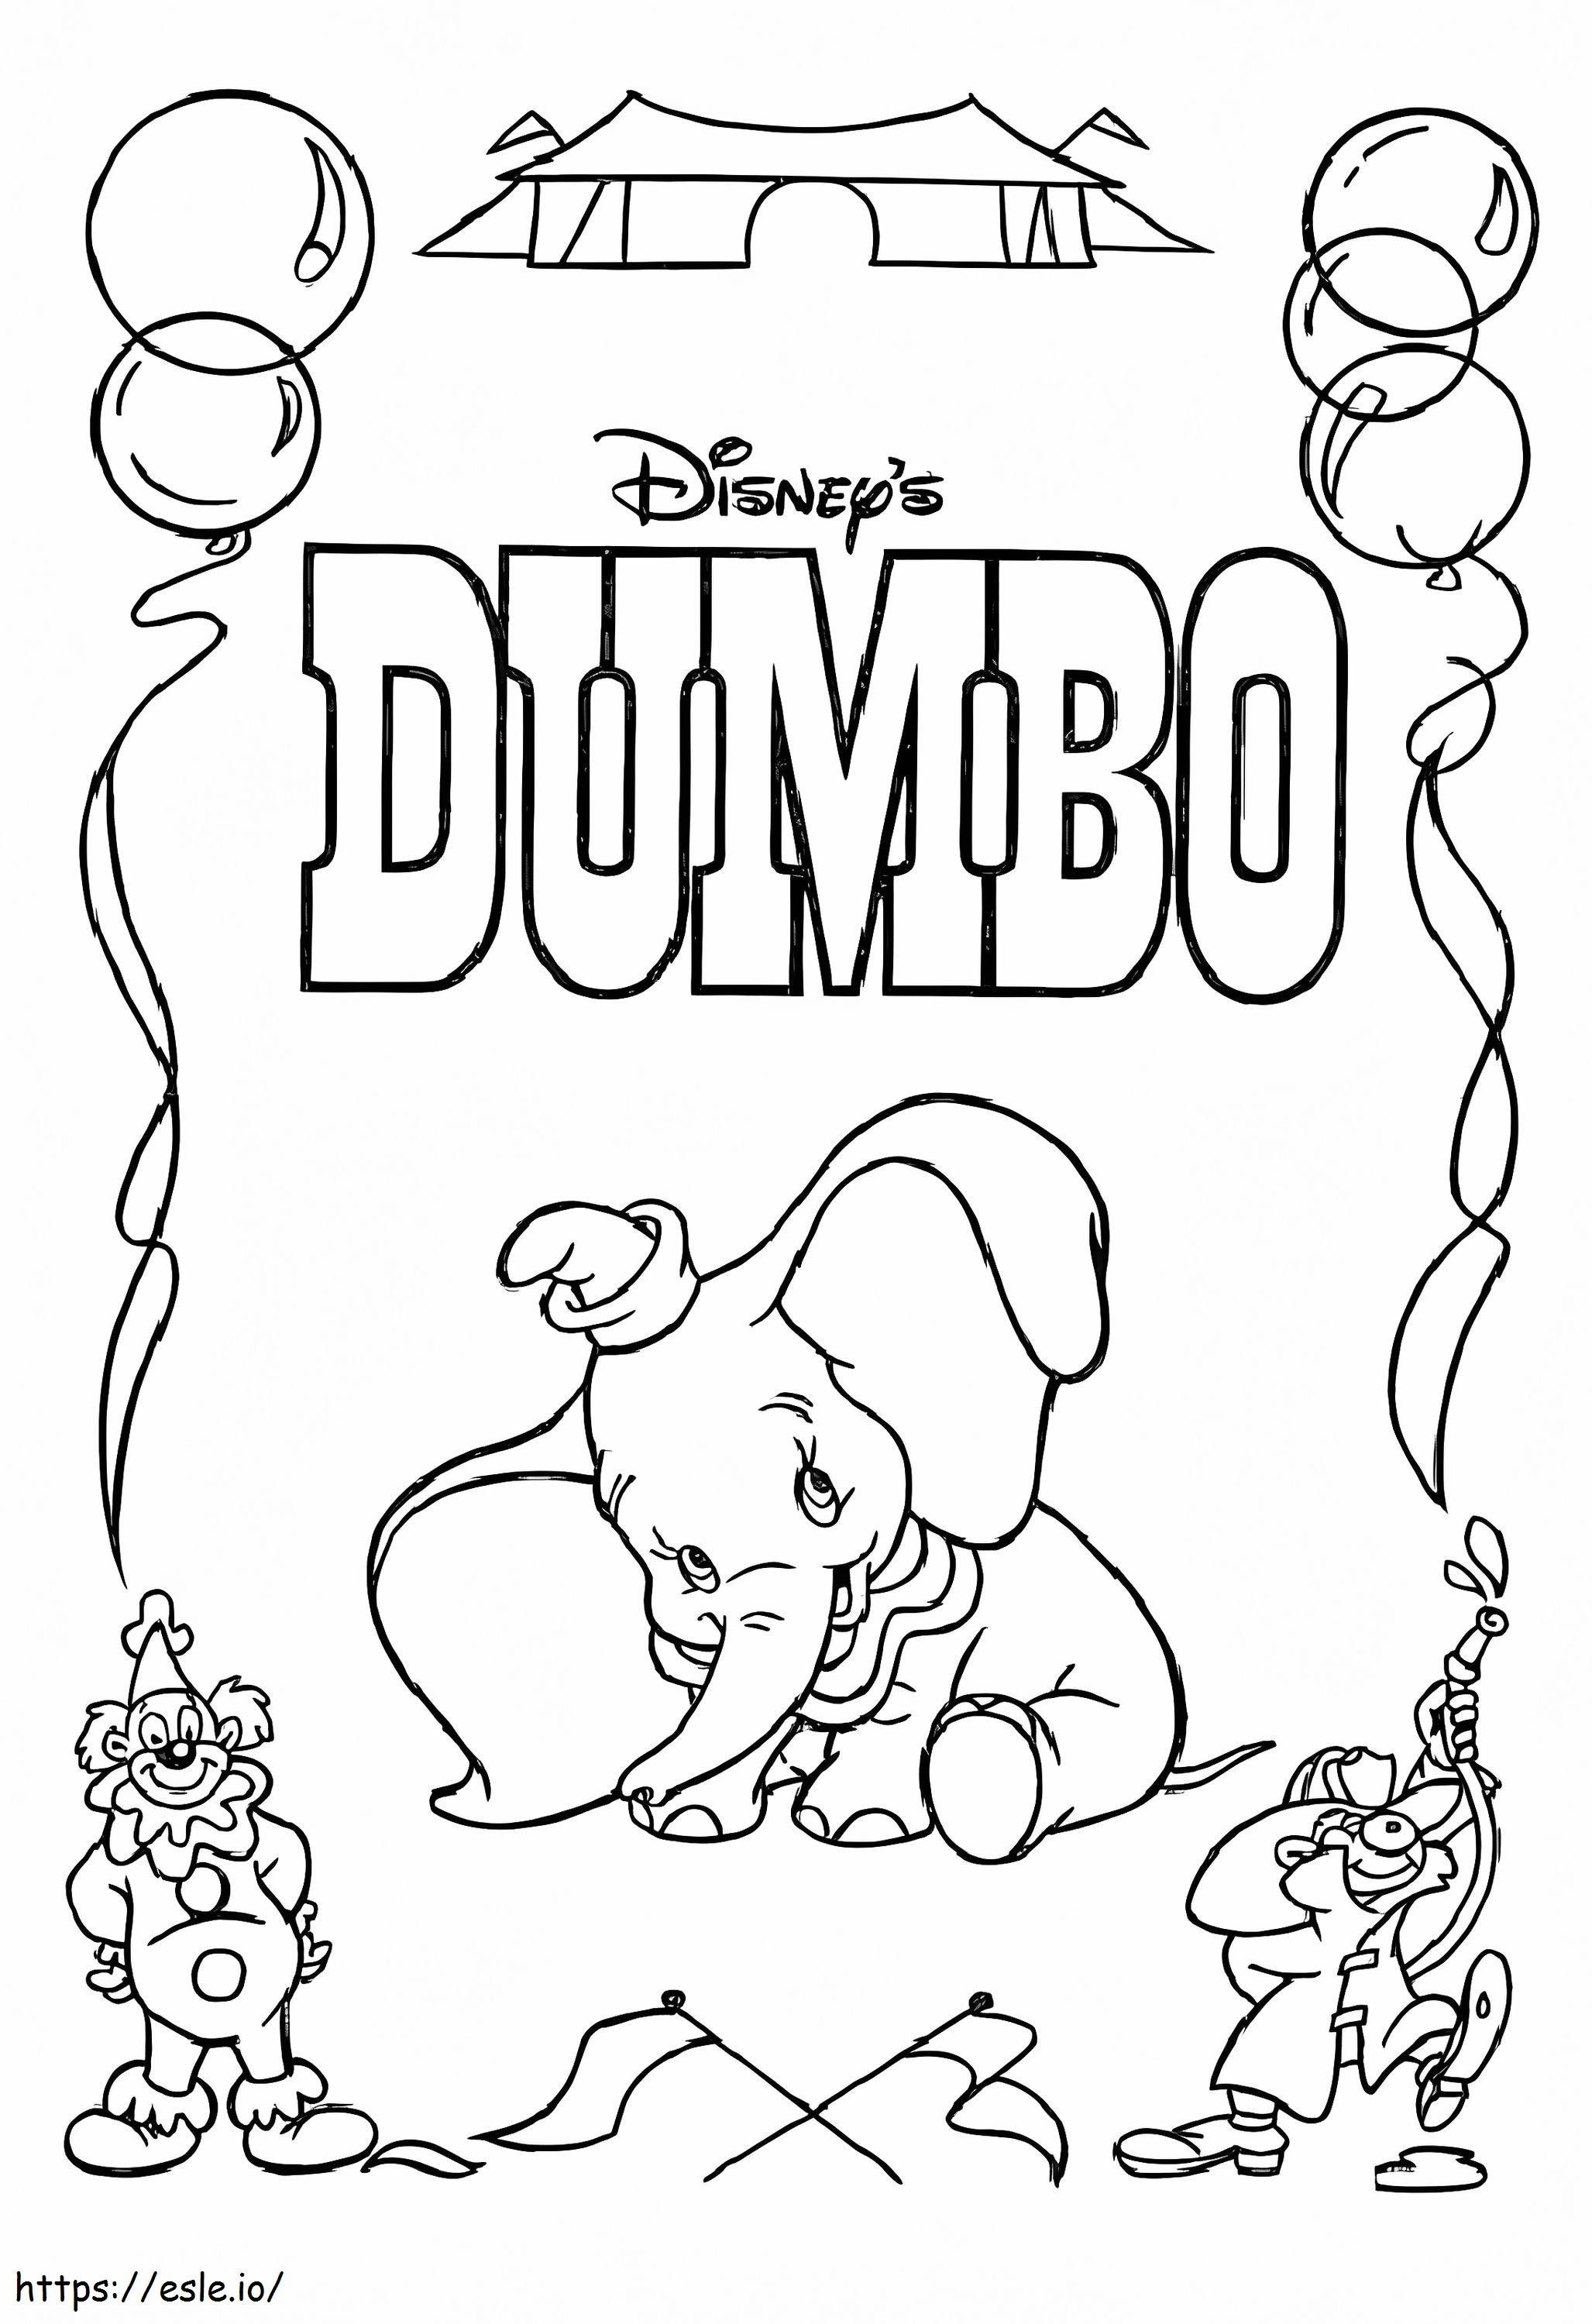 Dumbo Mignon 1 kolorowanka